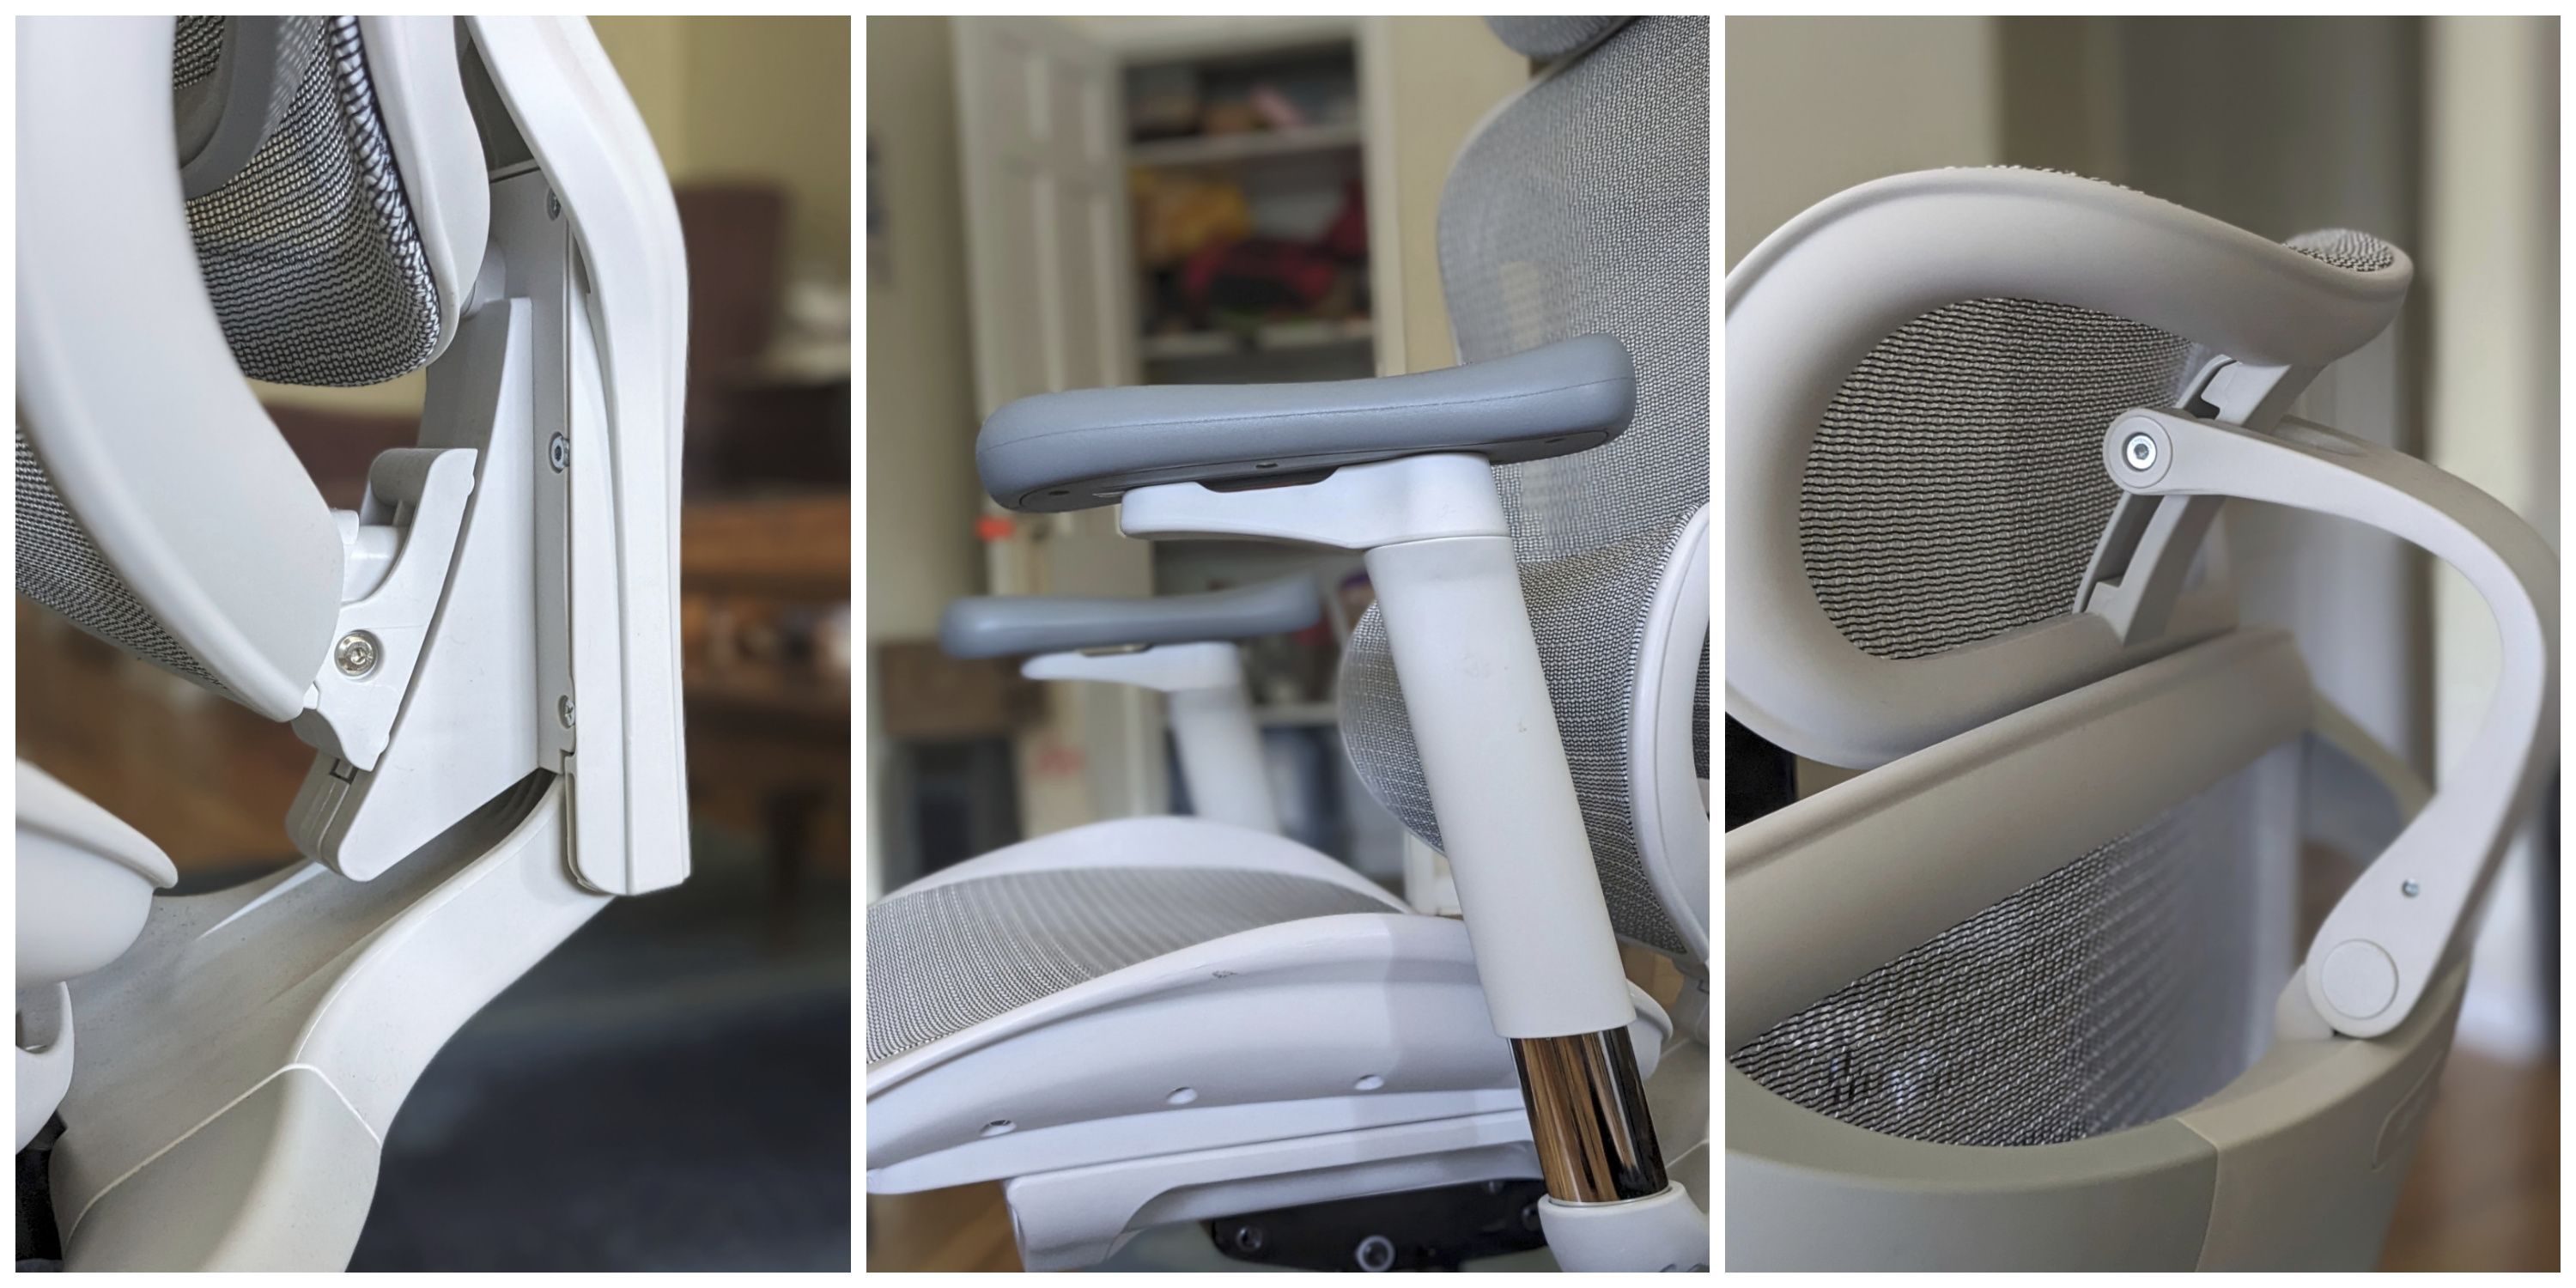 SIHOO Doro-C300 Ergonomic Office Chair Comfort